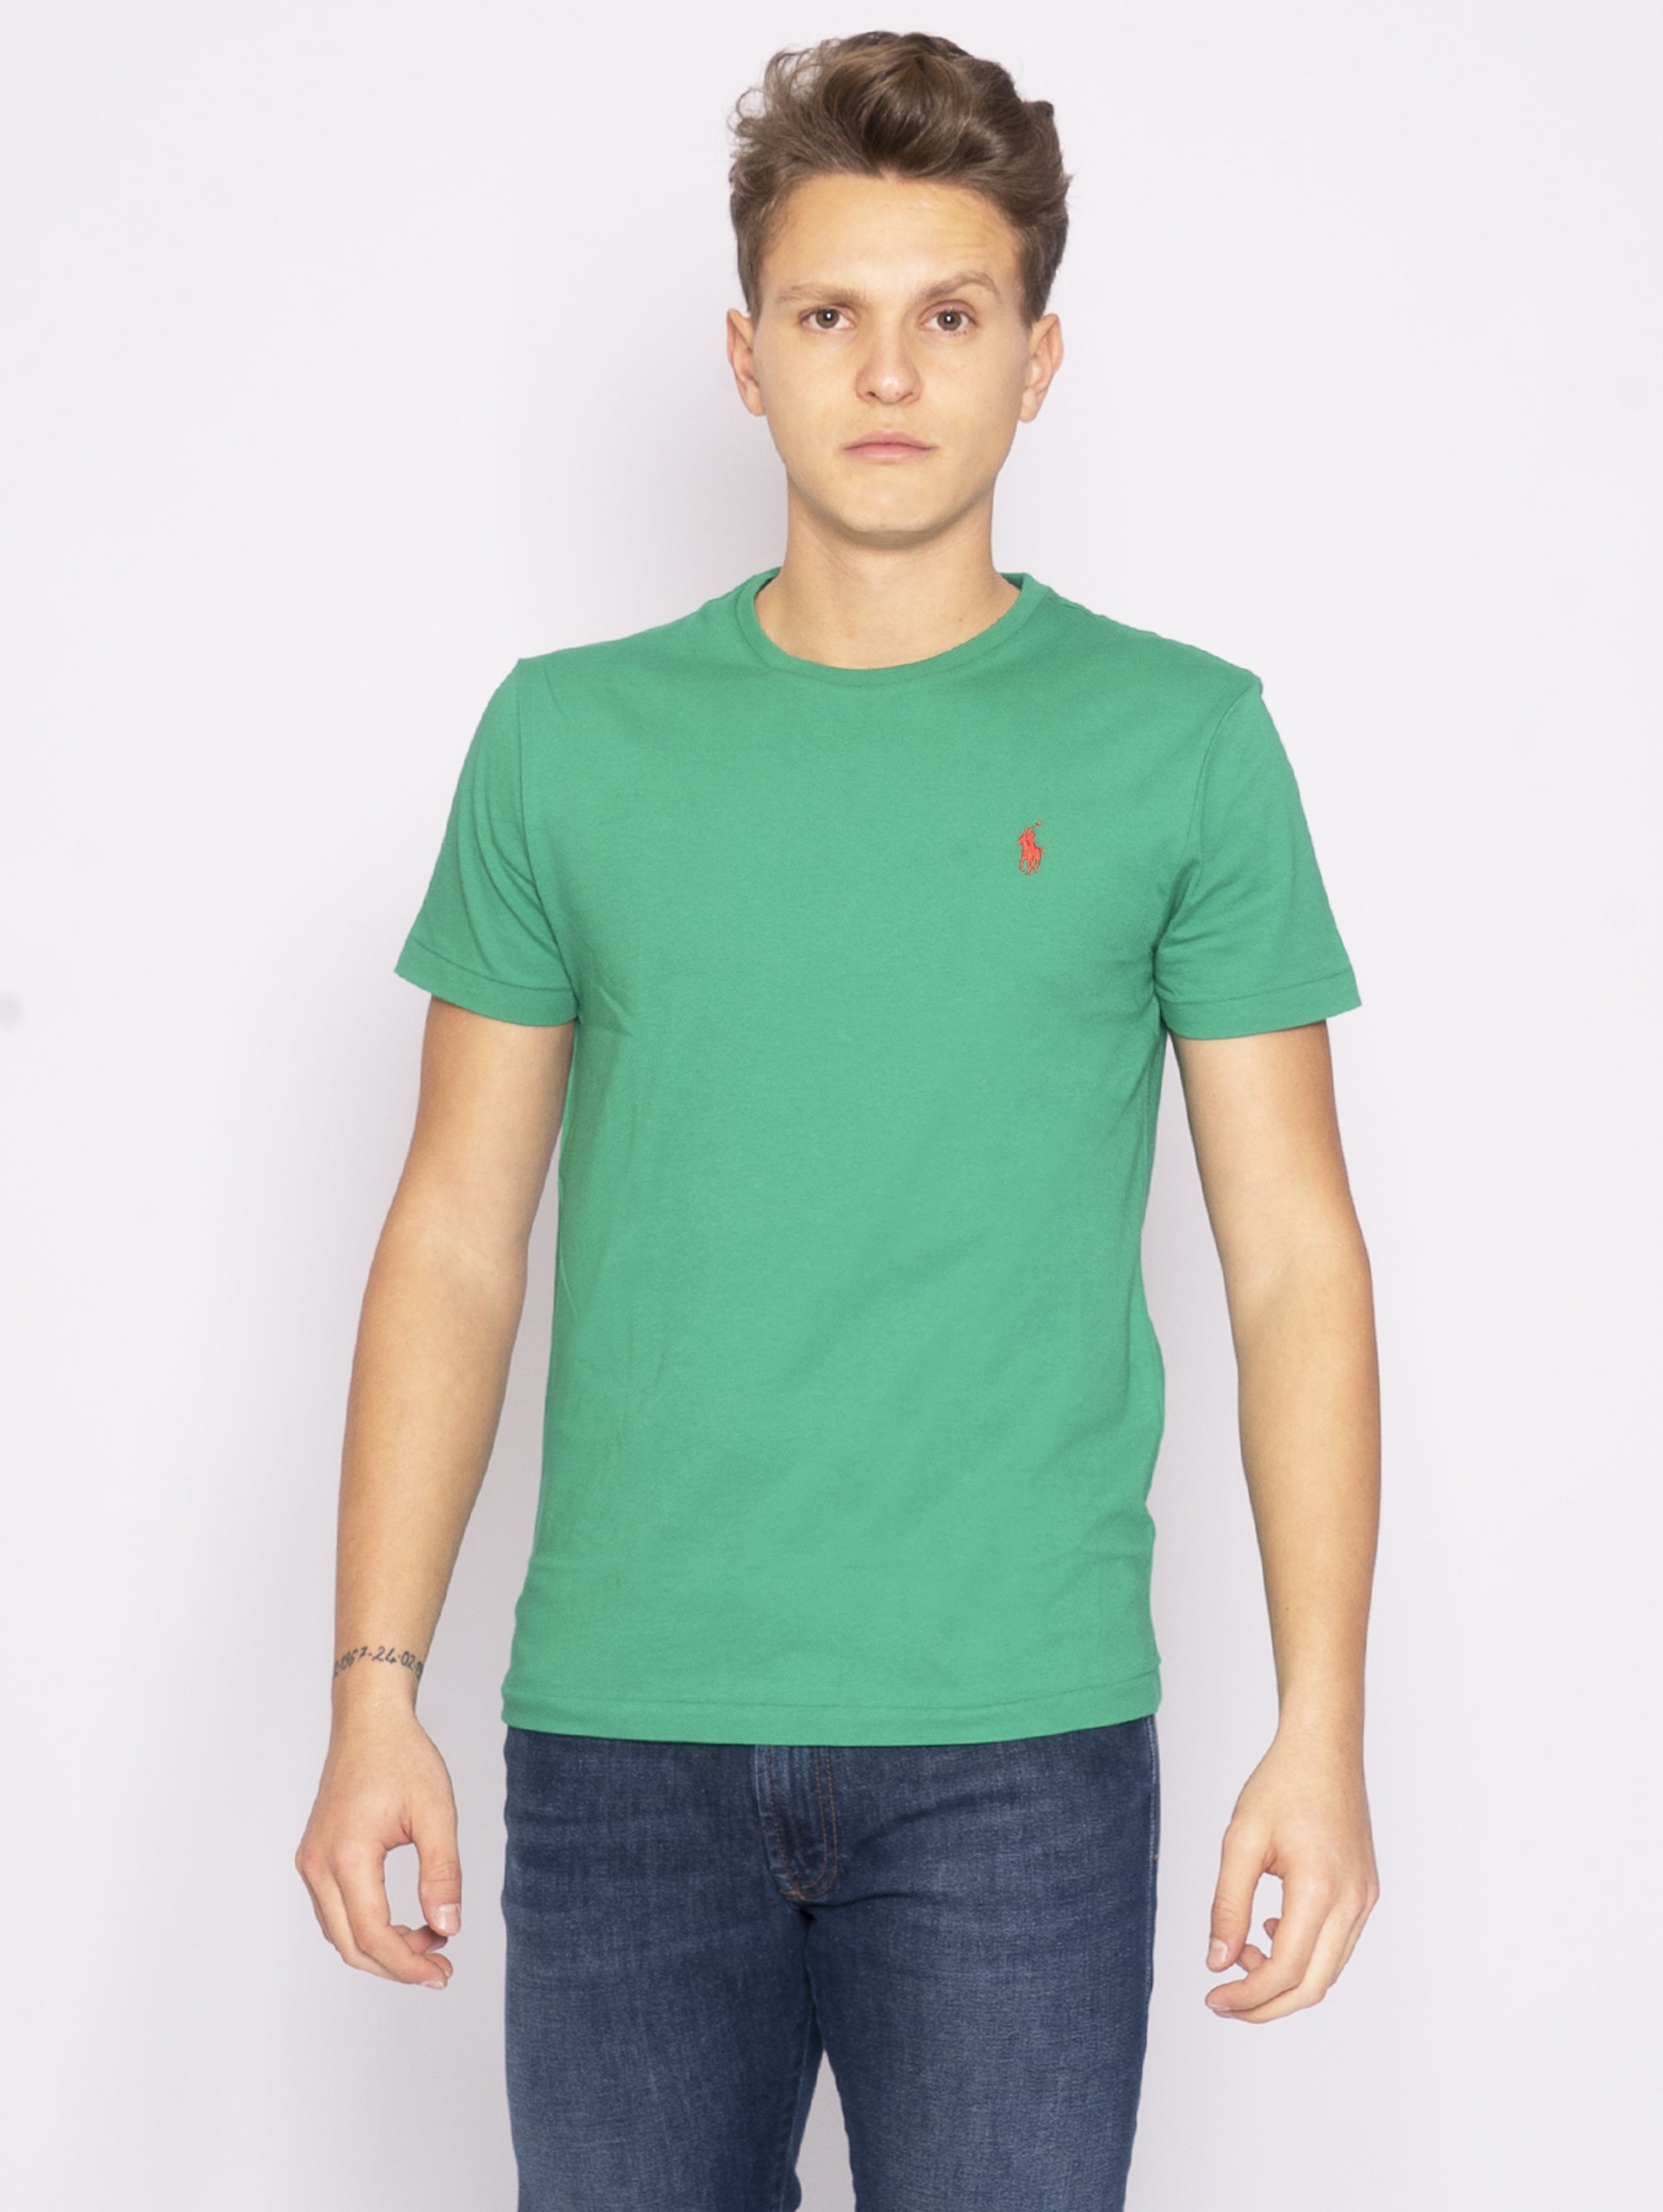 RALPH LAUREN-T-shirt Girocollo Custom Verde-TRYME Shop